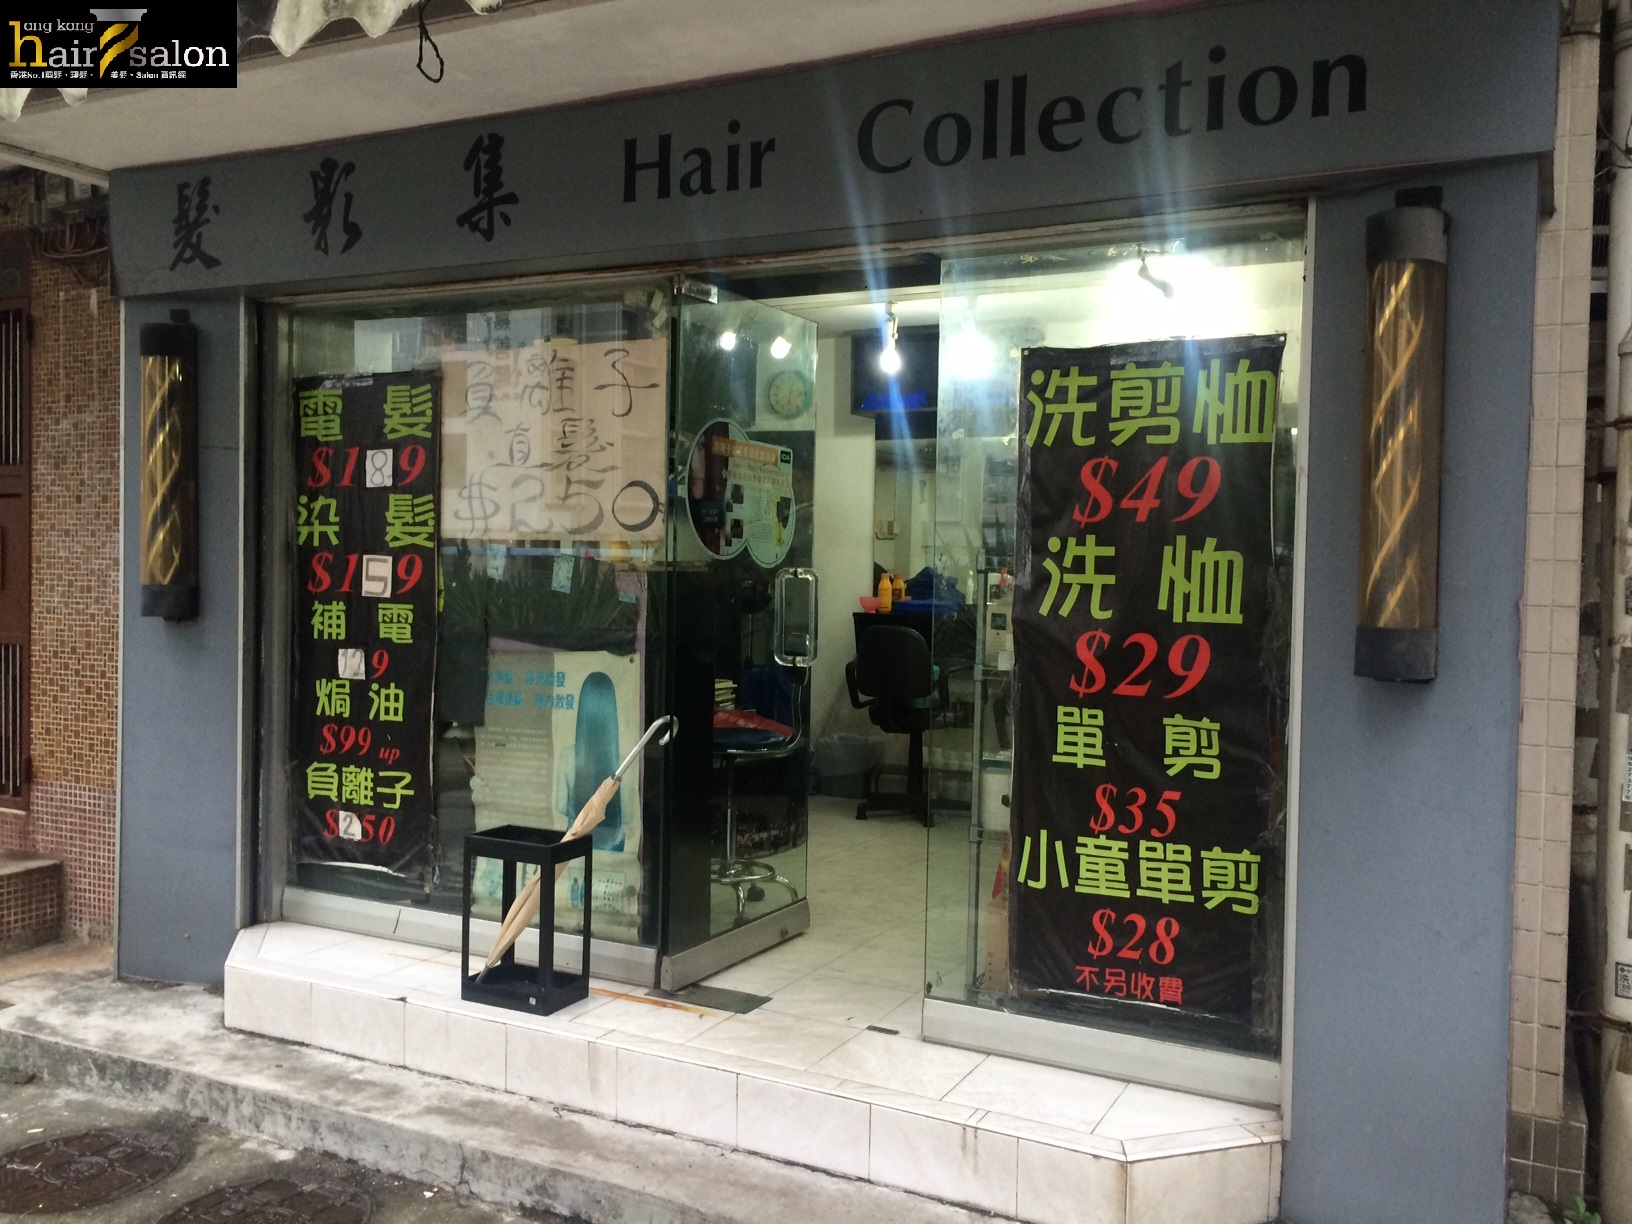 染髮: 髮影集 Hair Collection